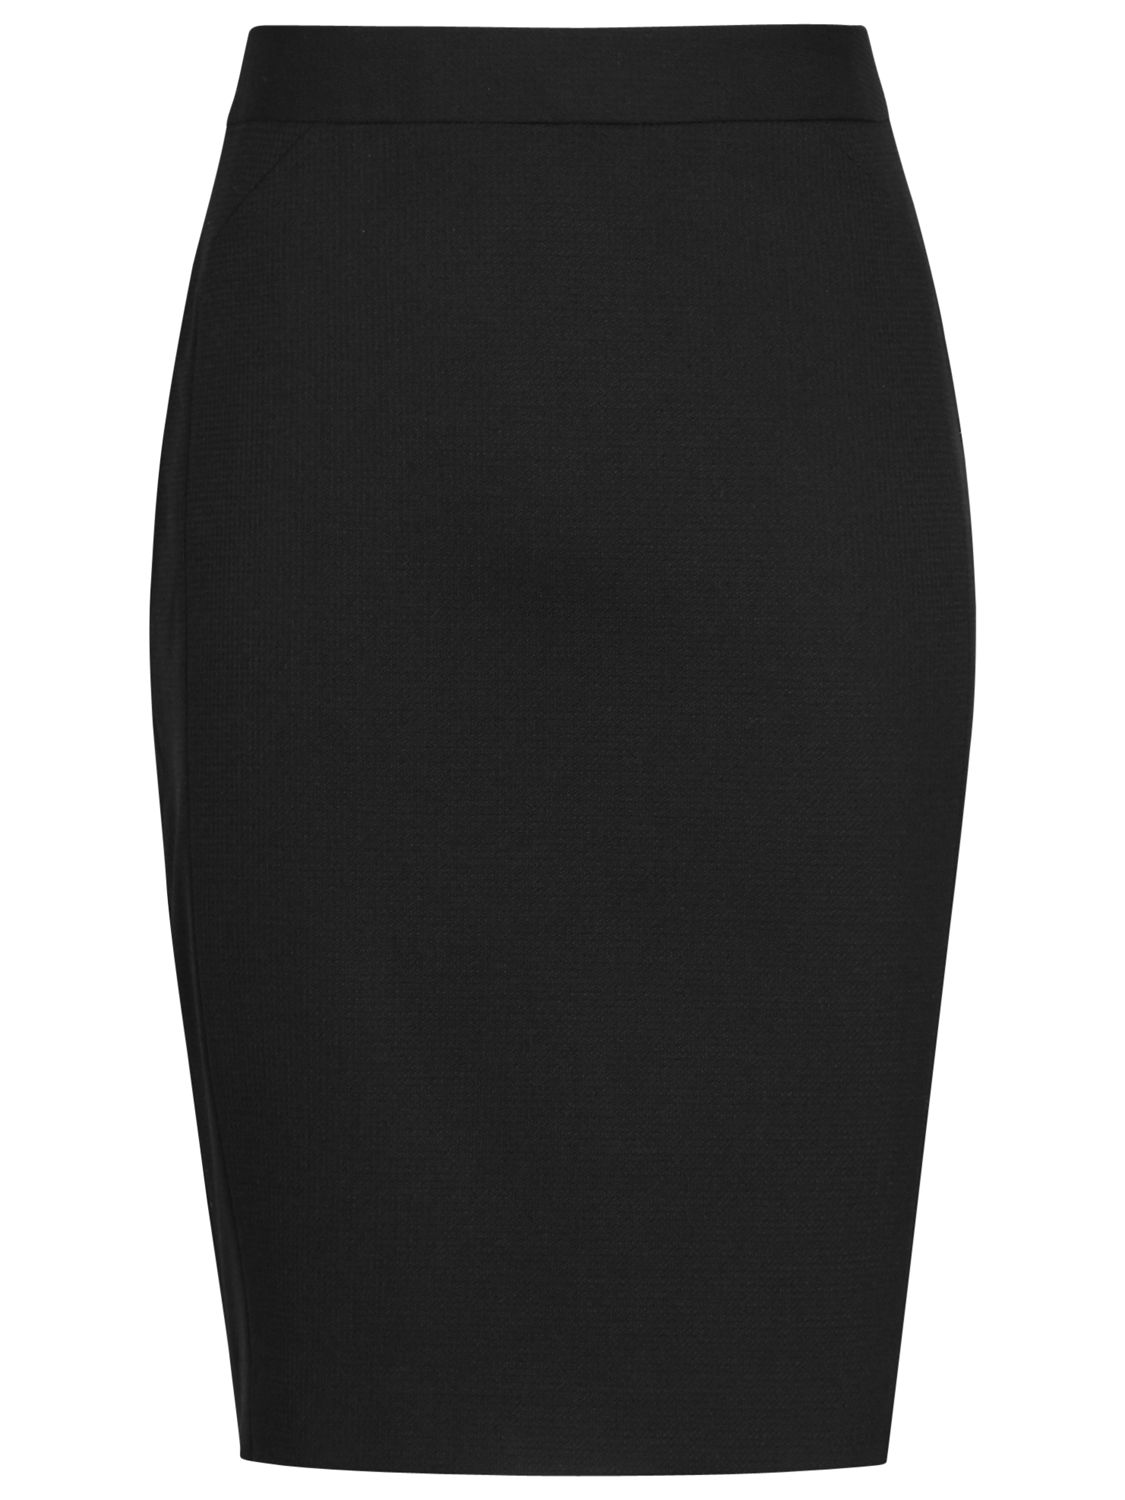 Reiss Dartmouth Textured Skirt, Black